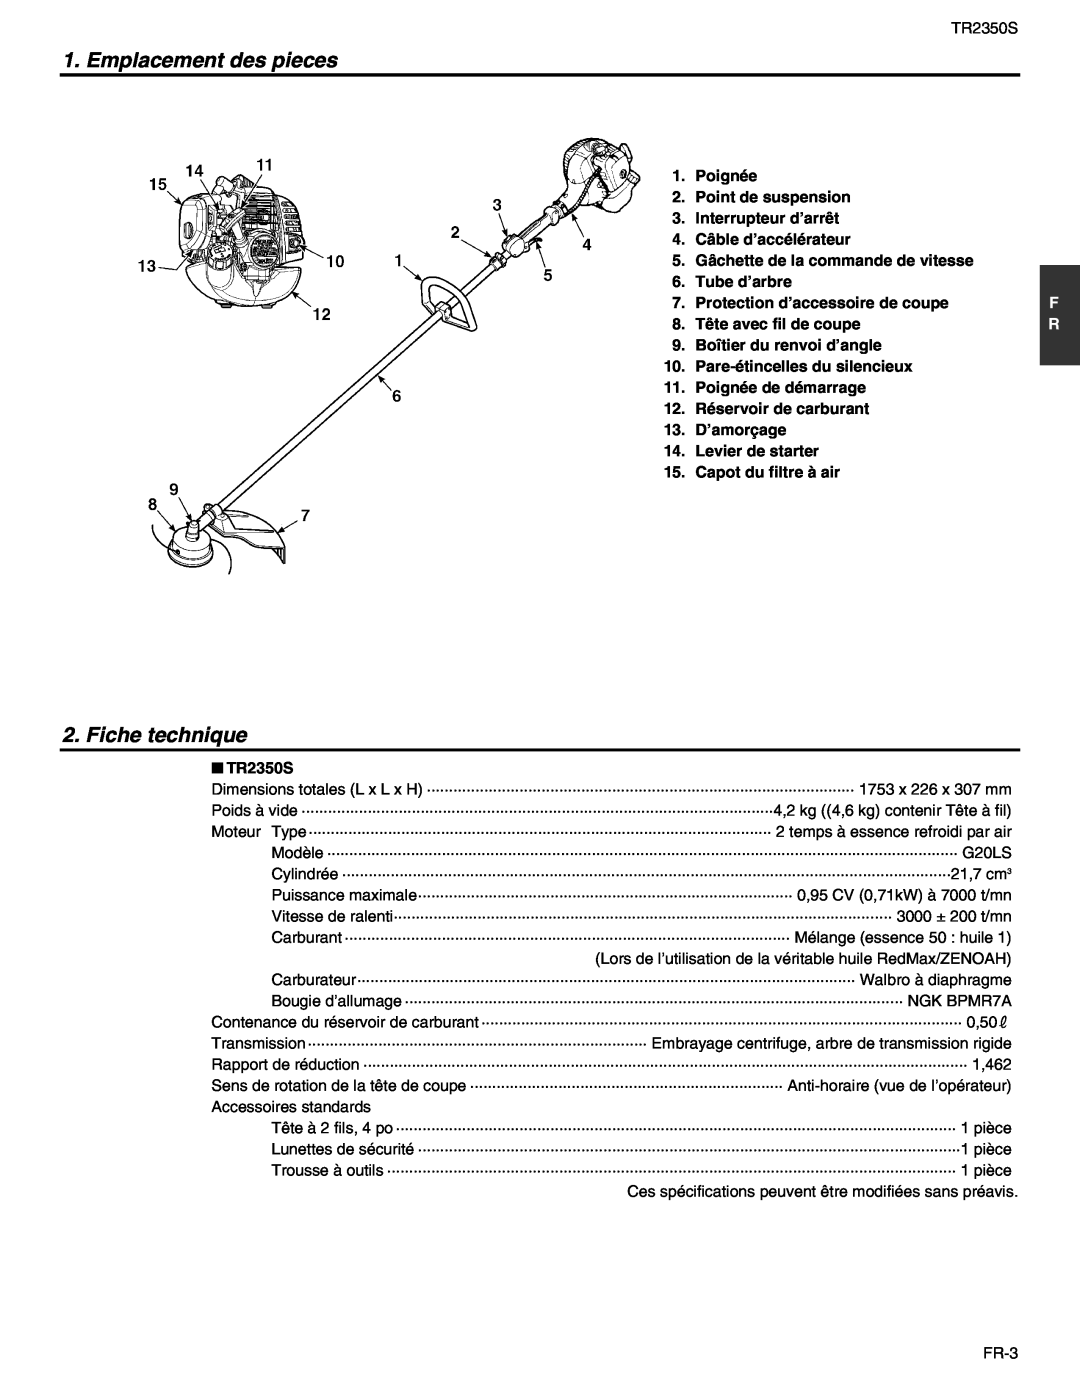 RedMax TR2350S manual Emplacement des pieces, Fiche technique 